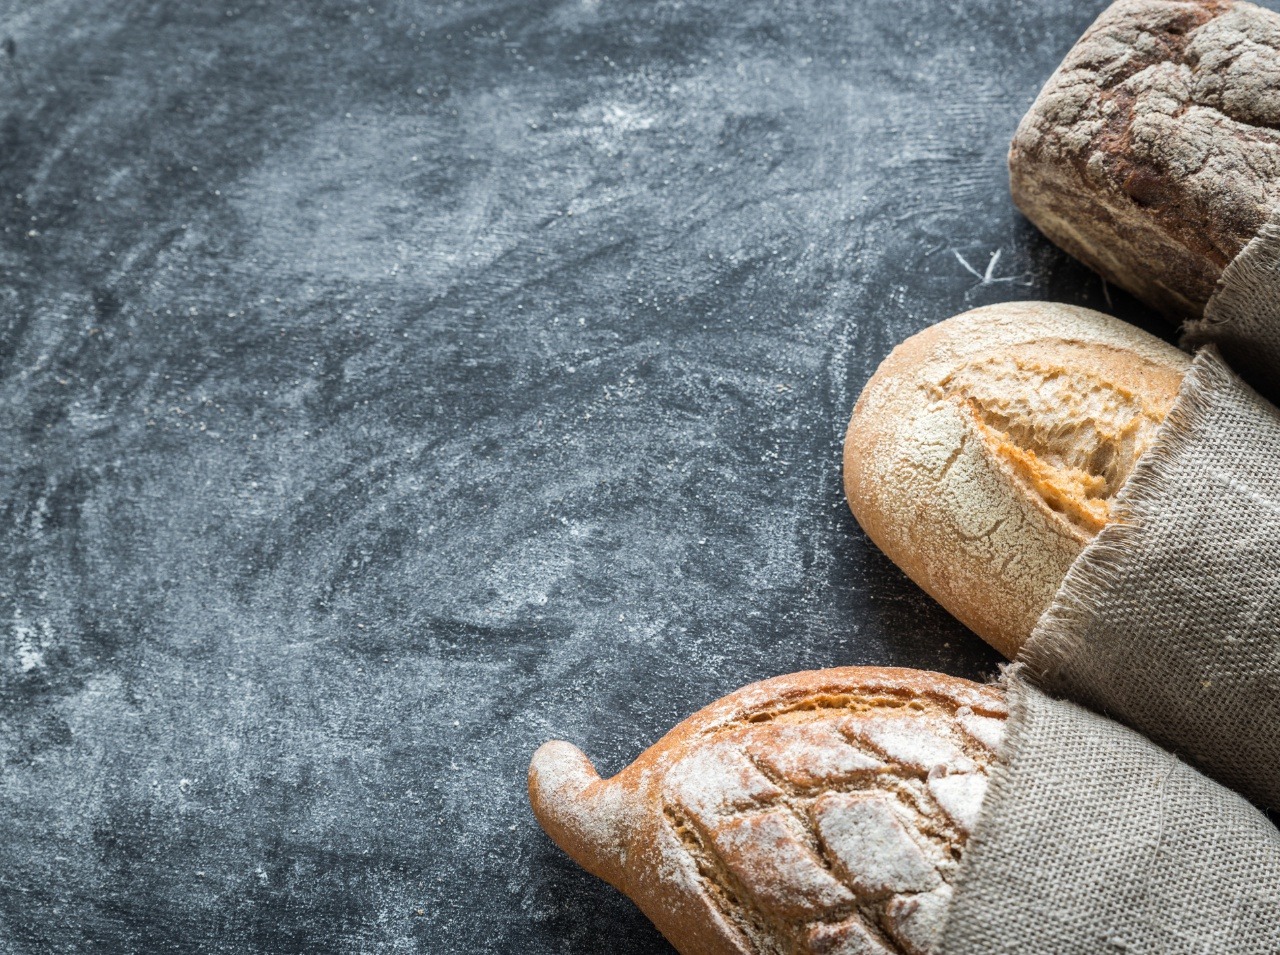 Úplne vynechať chlieb a celkovo sacharidy sa na zdraví odrazí. Nie však iba v pozitívnom slova zmysle. 